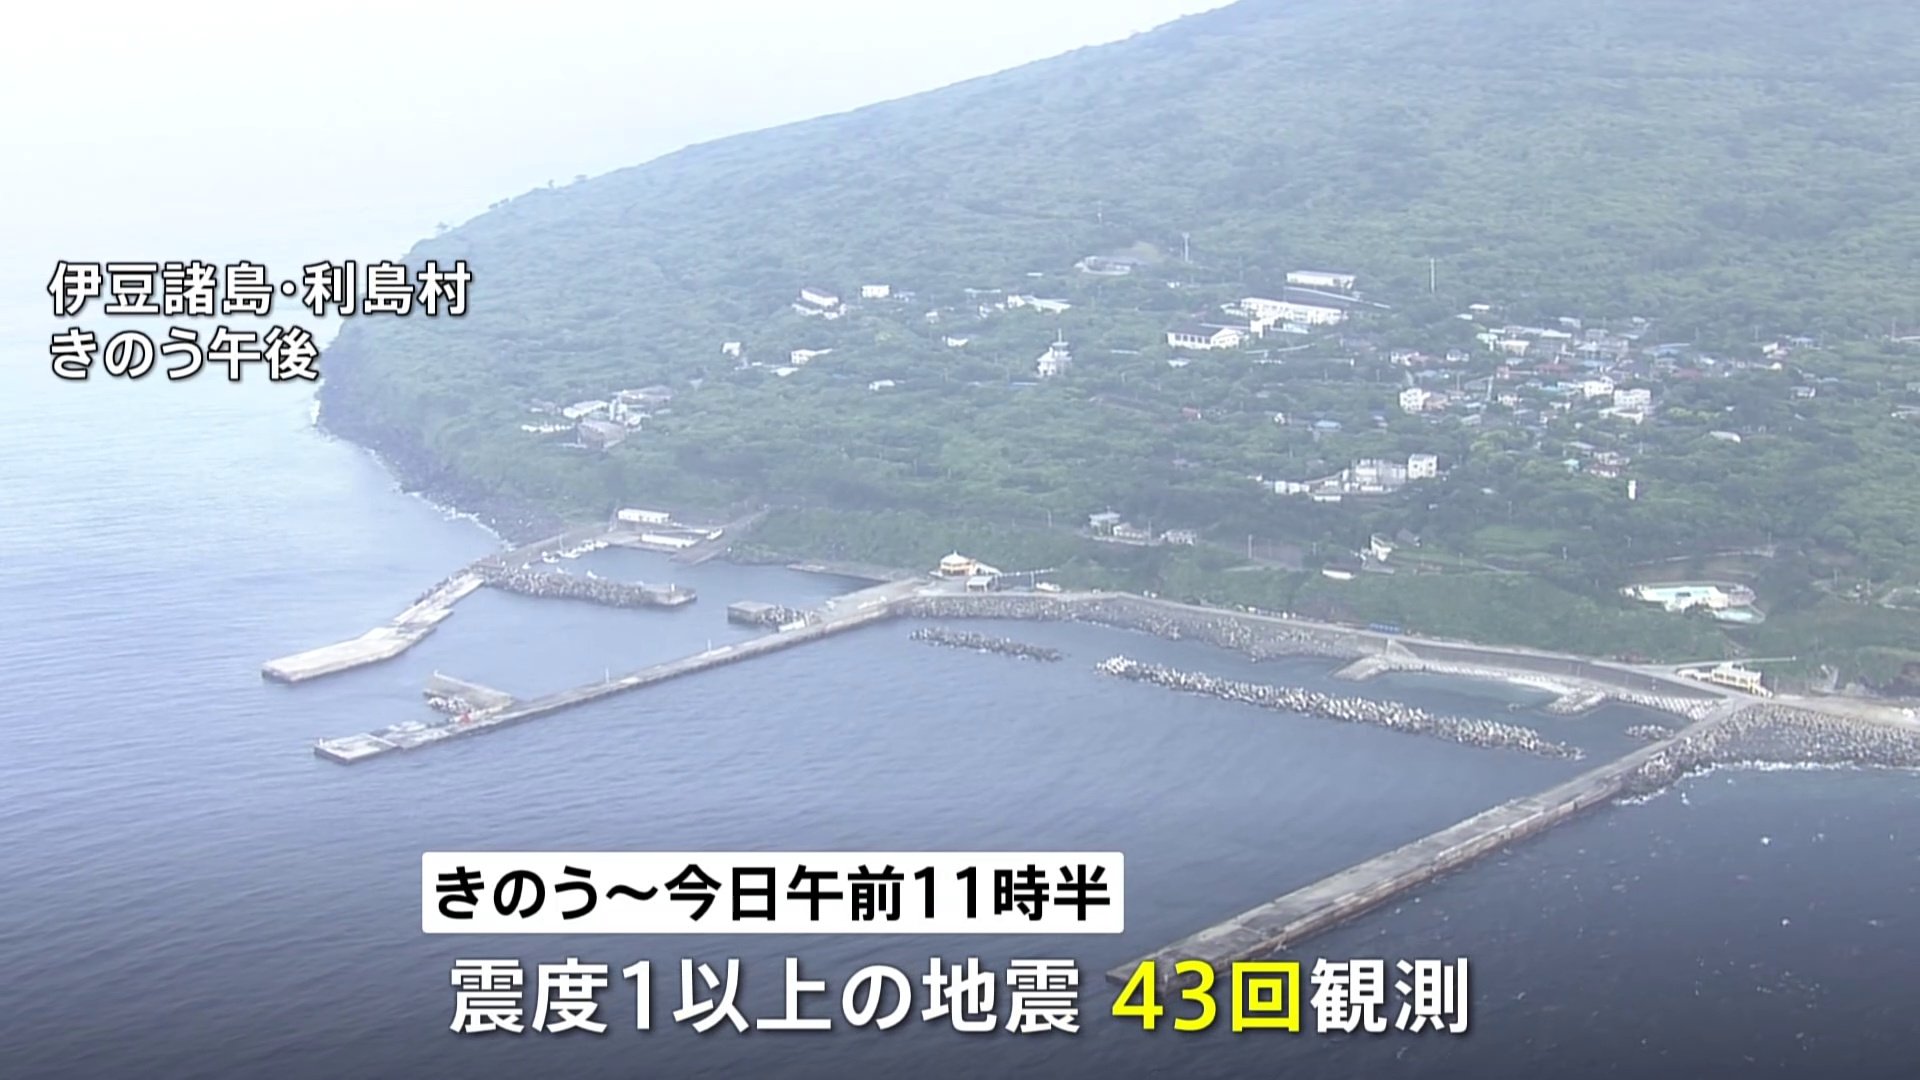 震度1以上の揺れ“43回”観測伊豆諸島で地震相次ぐ「今後規模が大きな地震起これば津波発生の恐れ」